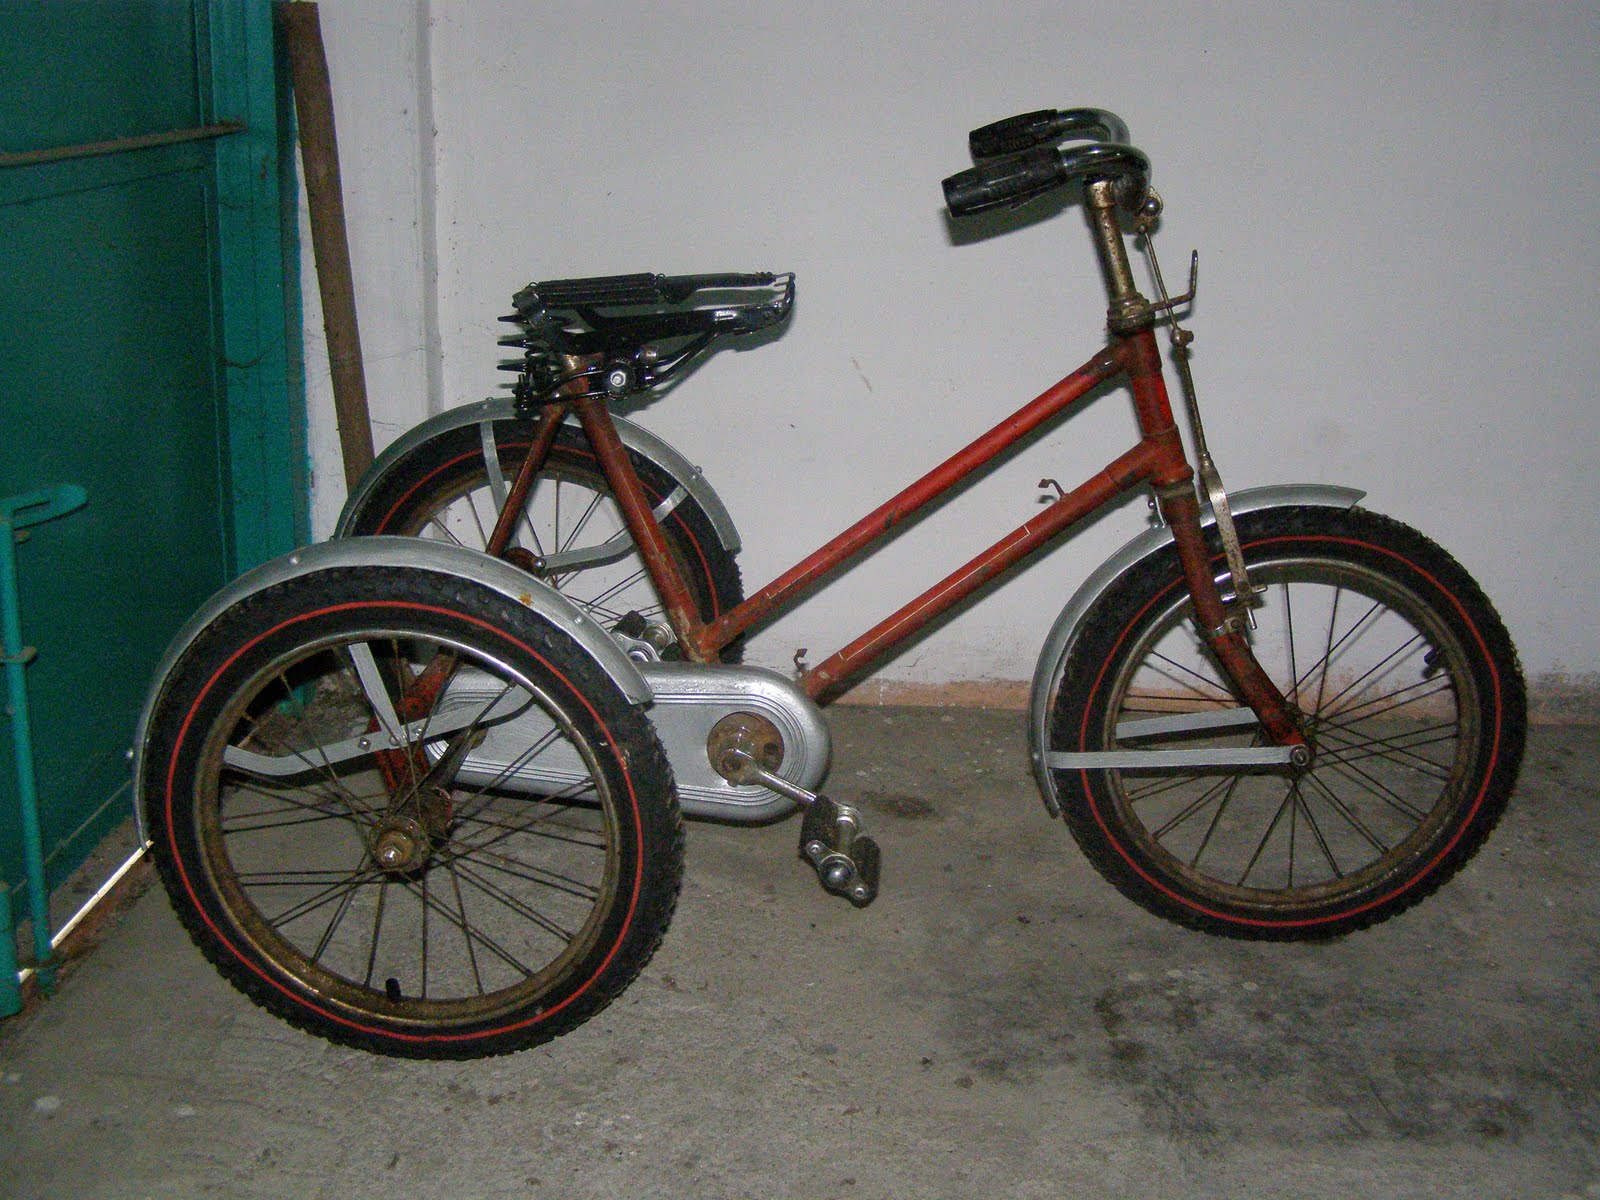 Motor Klasik Sepeda Ontel Dan Barang Antik Dijual Sepeda Anak